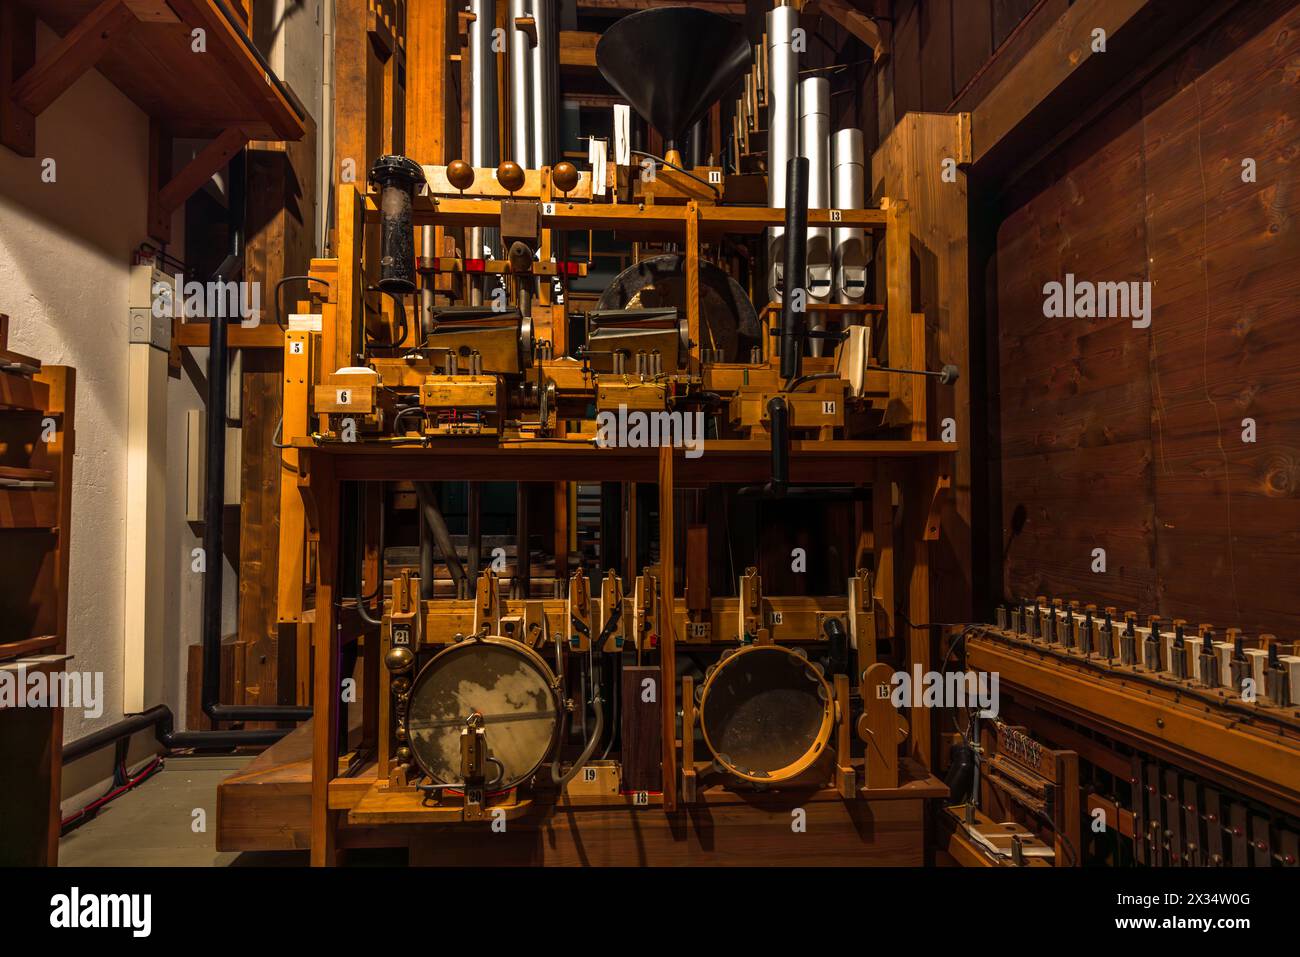 Un regard dans les coulisses de l'orgue Welte. Tous les sons et bruits sont produits avec de l'air comprimé. Filmmuseum, Potsdam, Brandebourg, Allemagne Banque D'Images